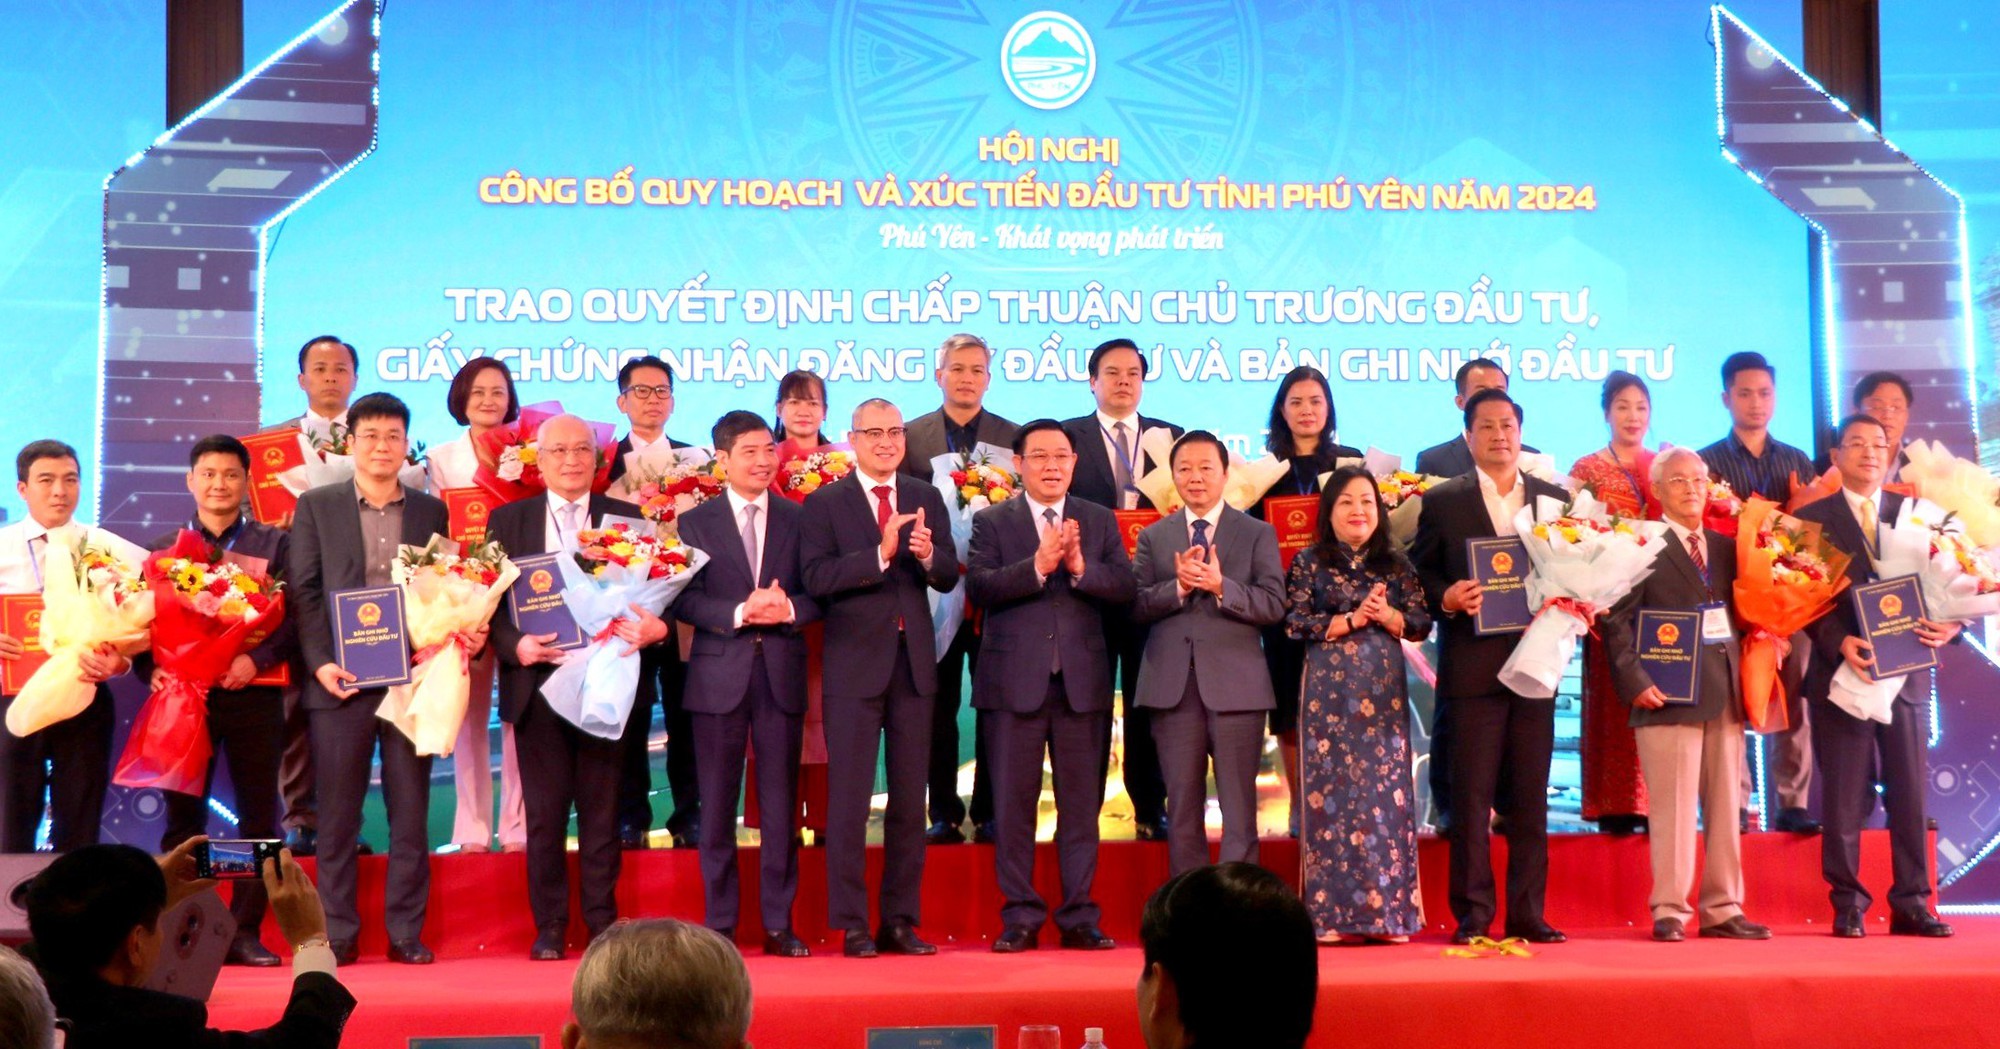 Phú Yên: Trao giấy chứng nhận đầu tư 14 dự án, tổng vốn gần 10.500 tỷ đồng- Ảnh 1.